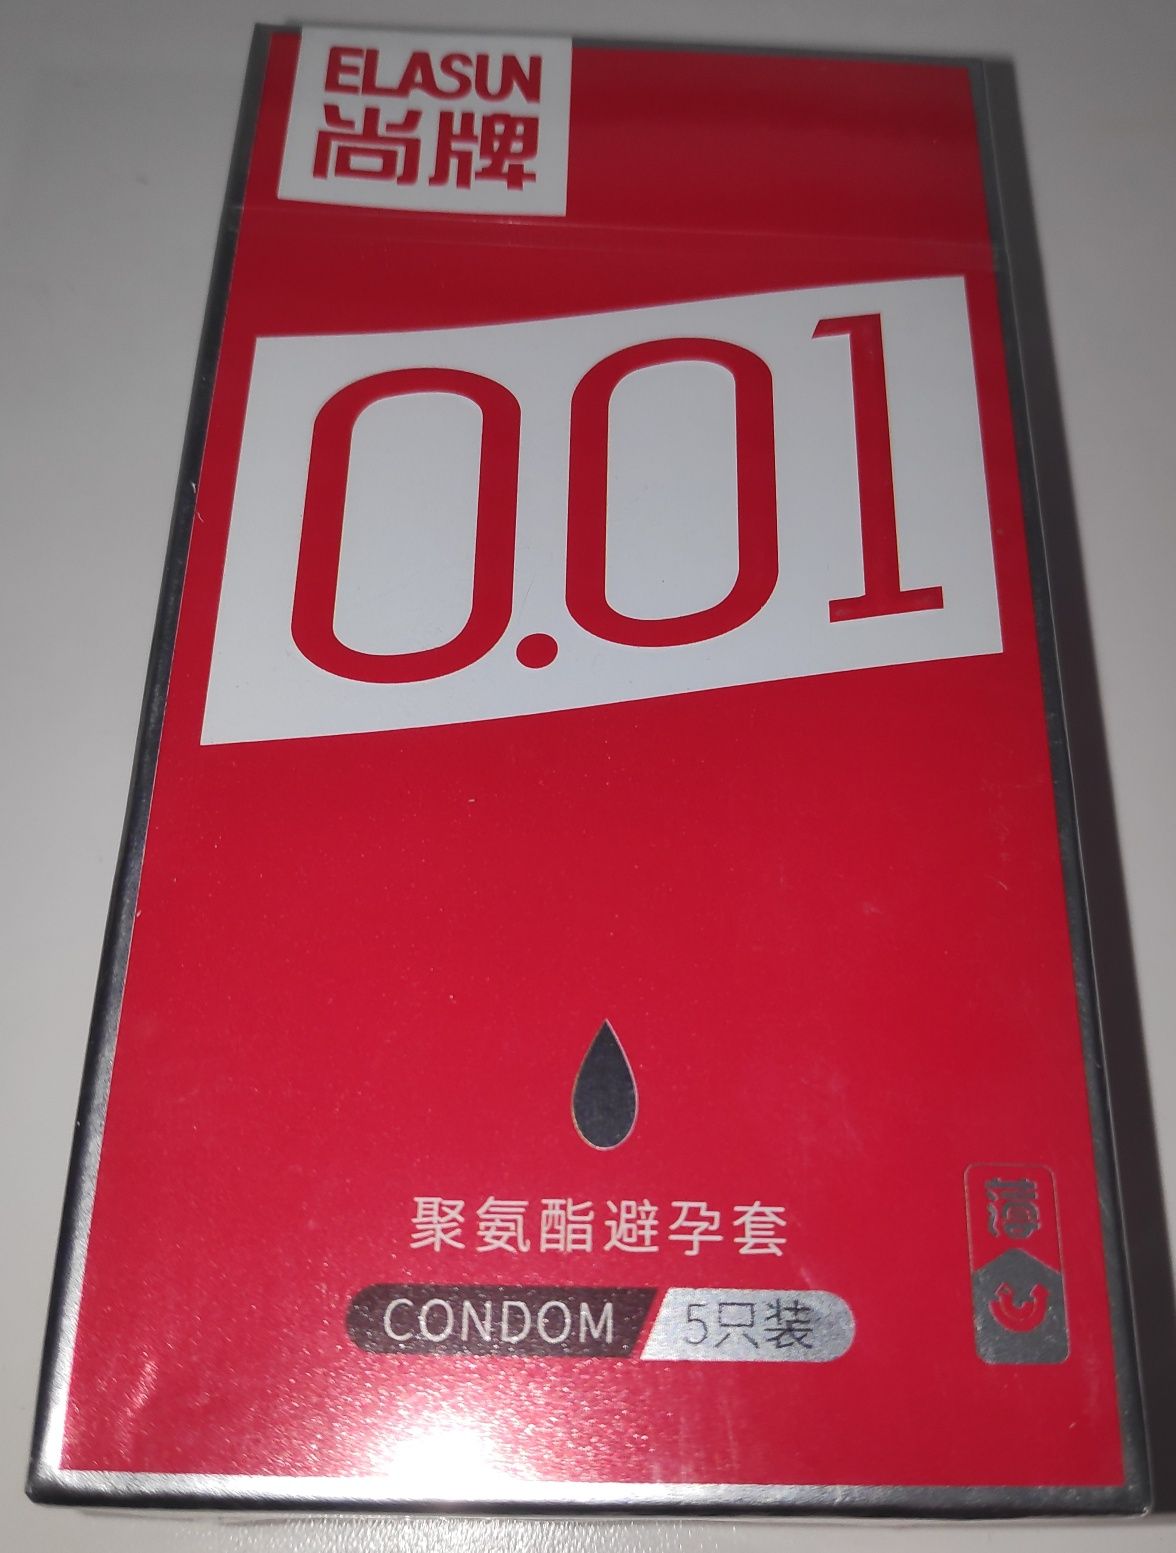 Презервативы полиуретановые Elasun 001 - 5 штук 320 грн безлатексные